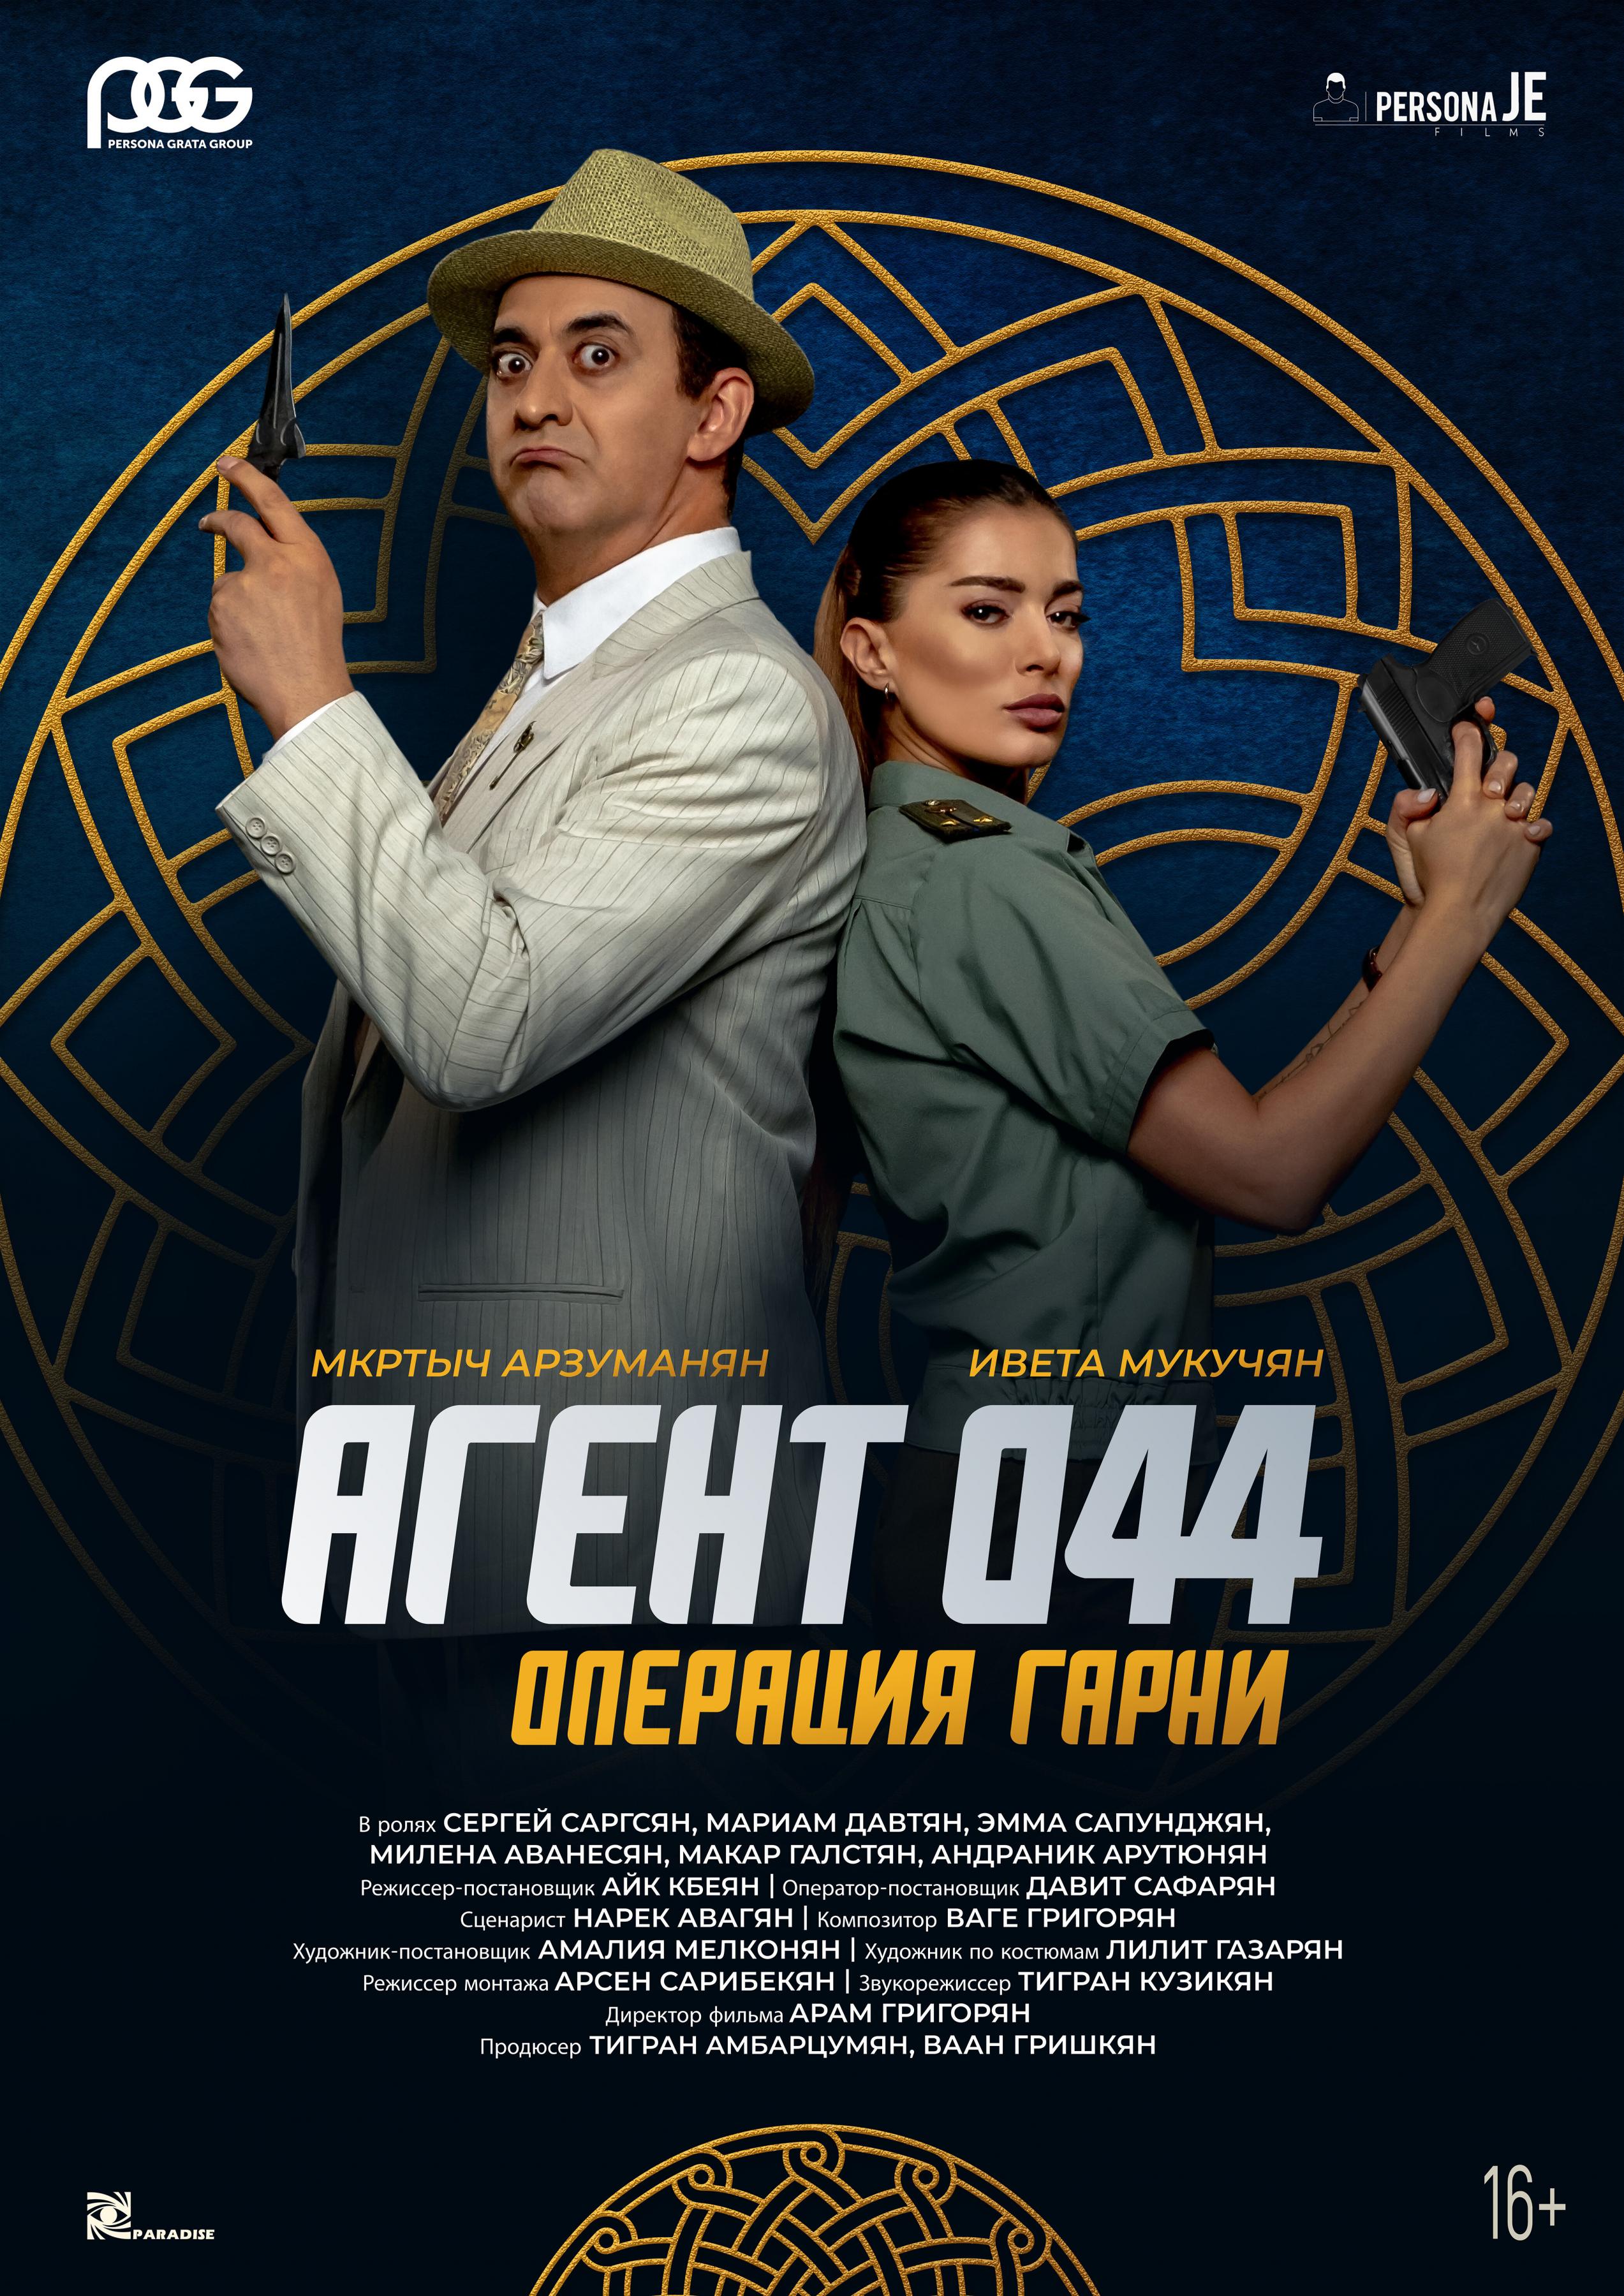 Постер фильма Агент 044: Операция Гарни | Agent 044: Operation Garni